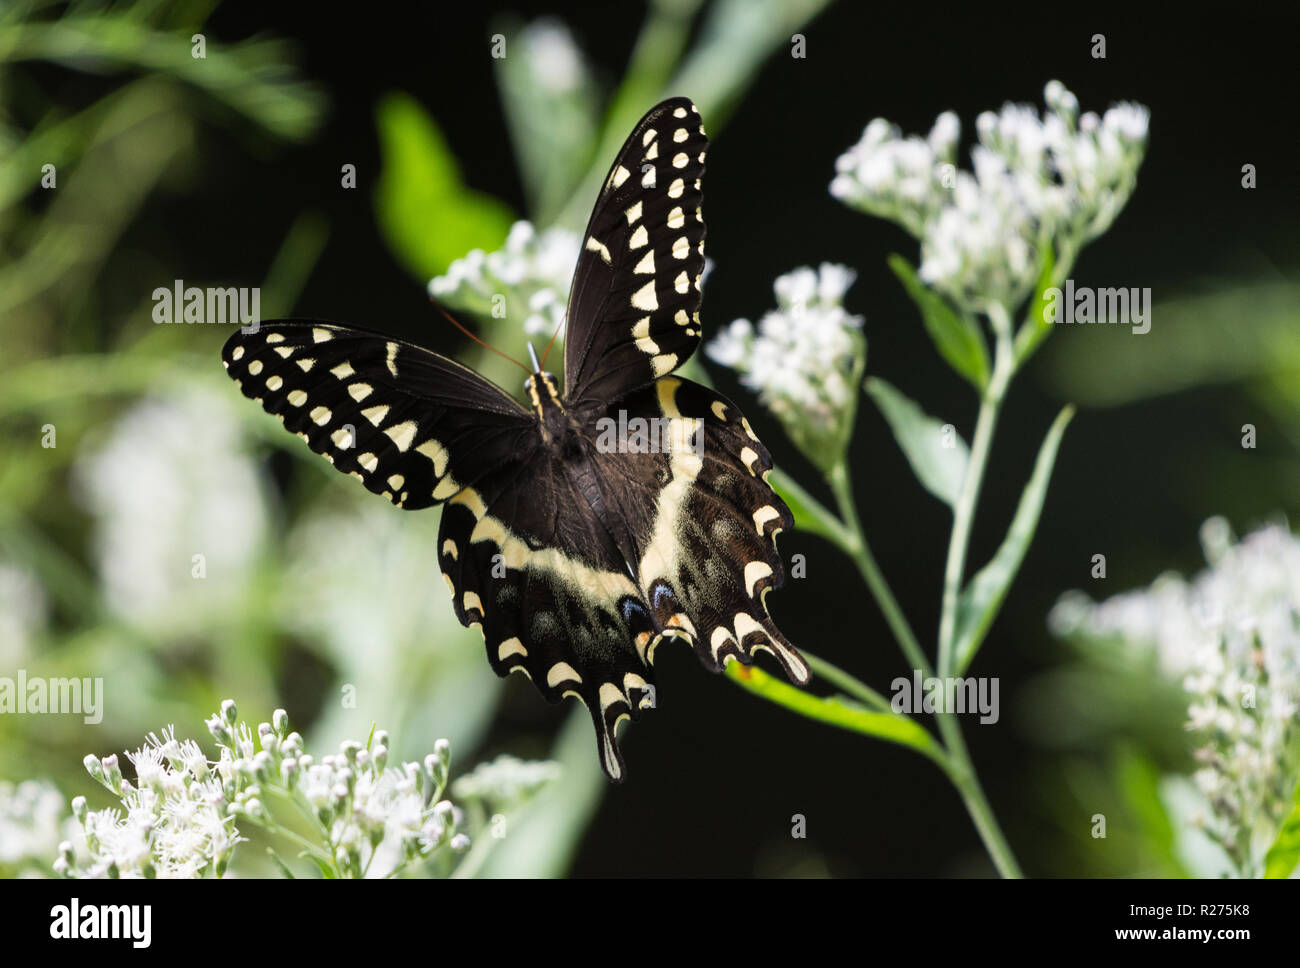 A Black Swallowtail Butterfly (Papilio polyxenes) se nourrissant de fleurs blanches. Houston, Texas, USA. Banque D'Images